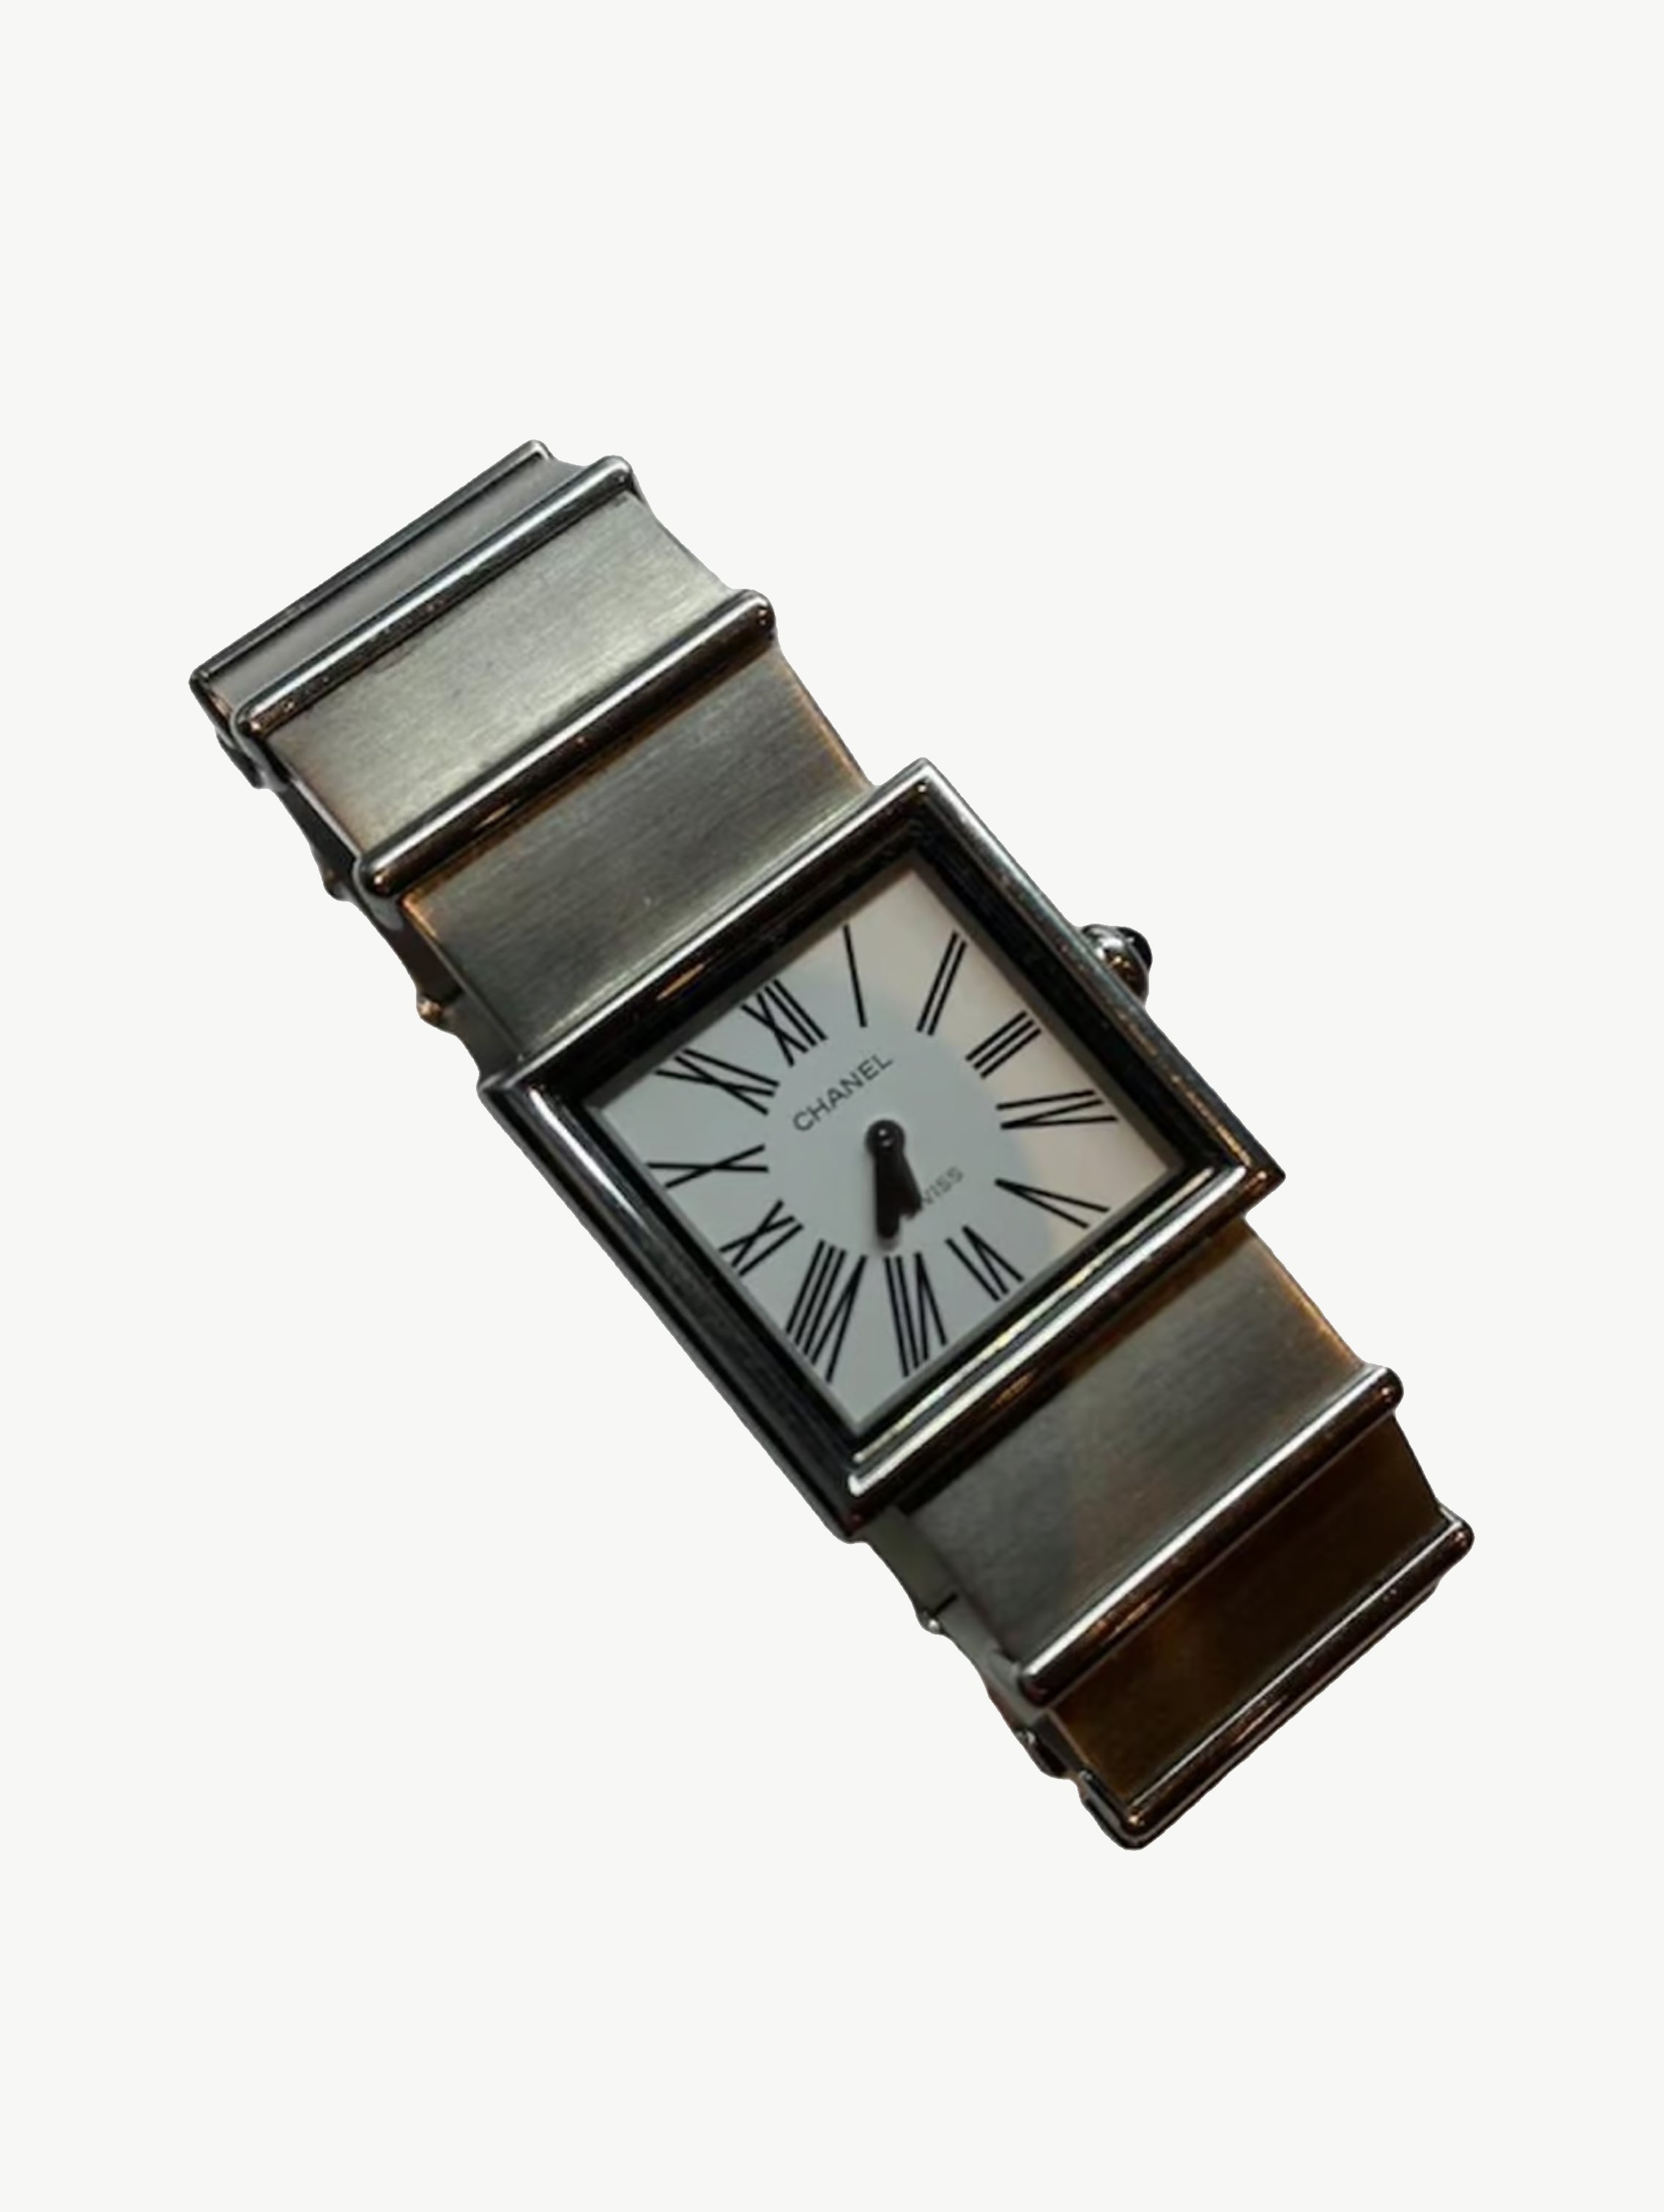 Vintage Mademoiselle steel watch